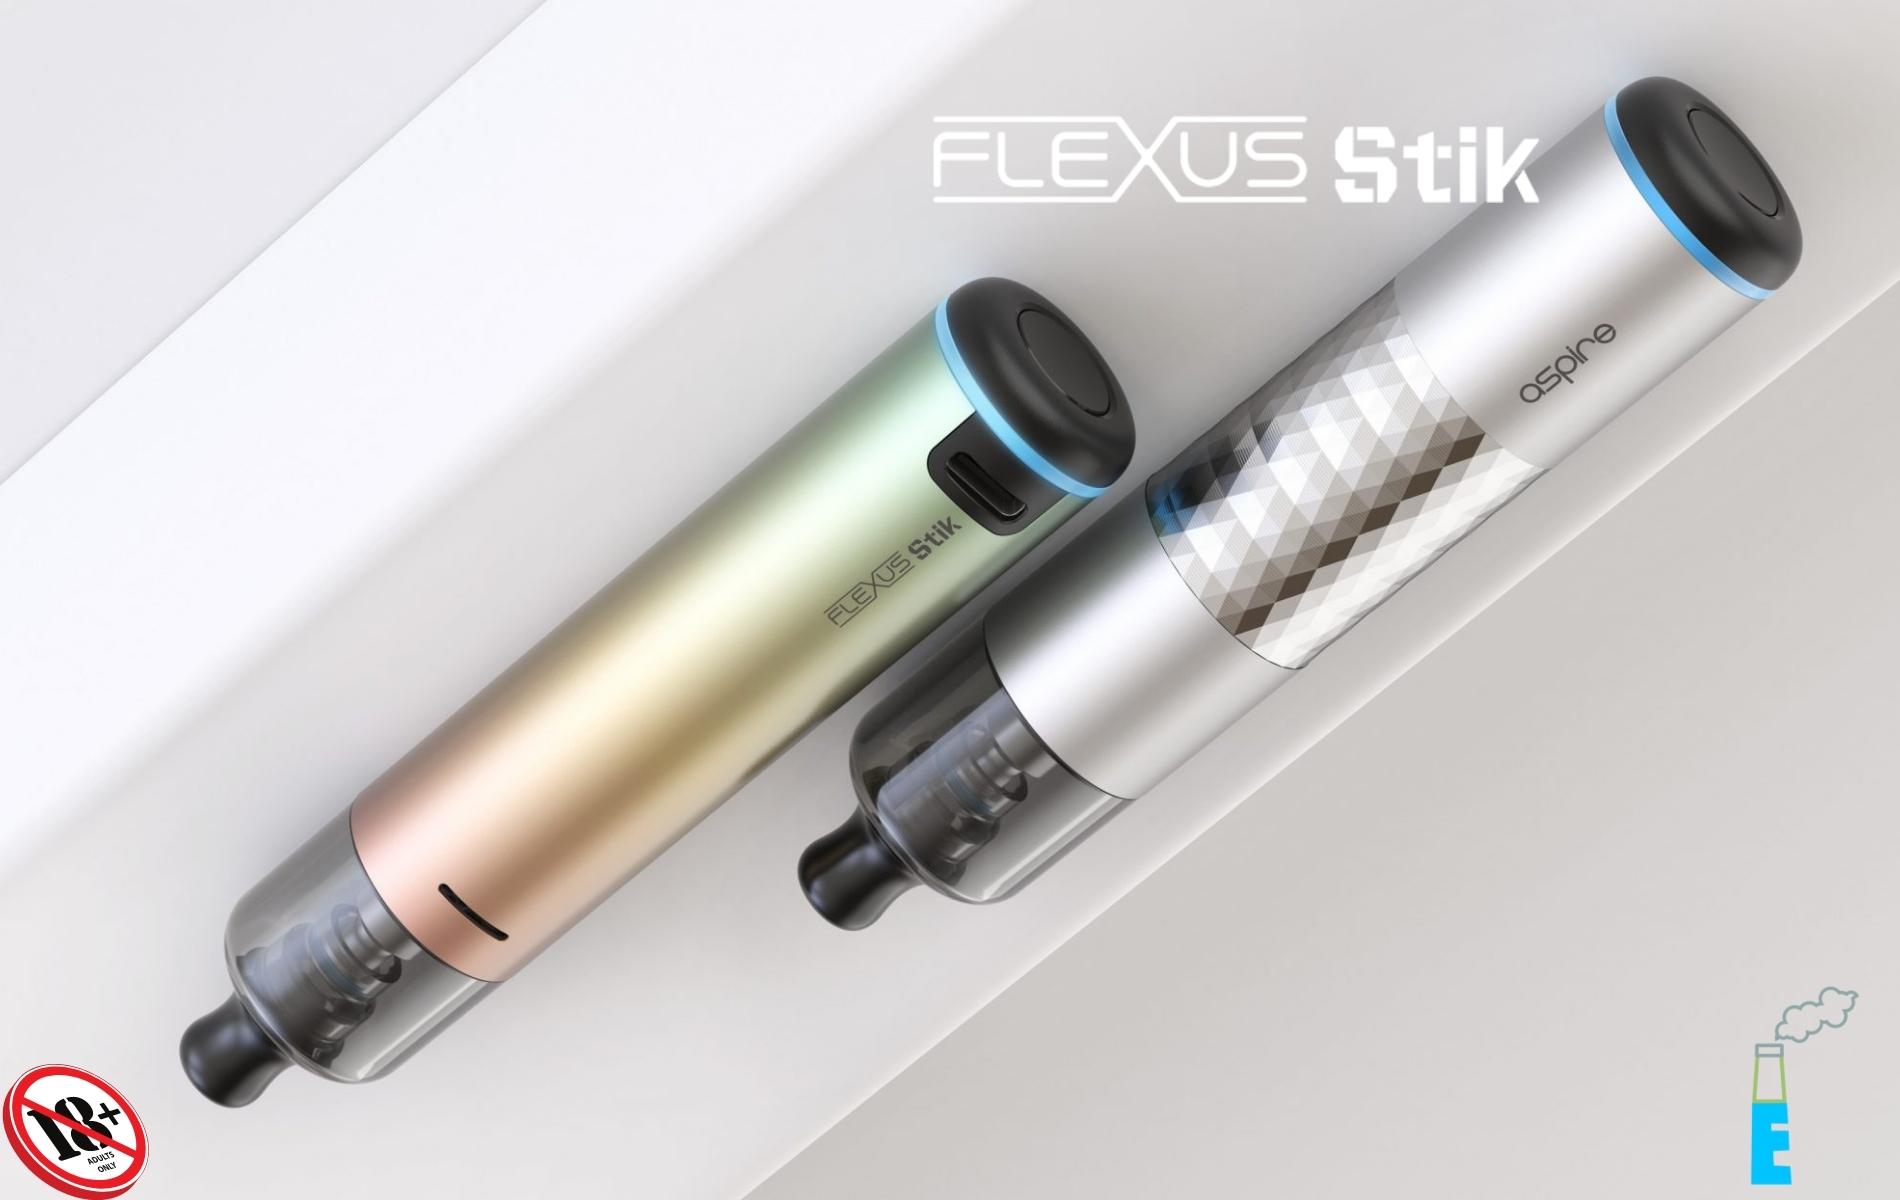 Flexus Stik by Aspire mang thiết kế dạng trụ, phần khung làm từ hợp kim nhôm với các phiên bản màu sắc đẹp mắt khác nhau.